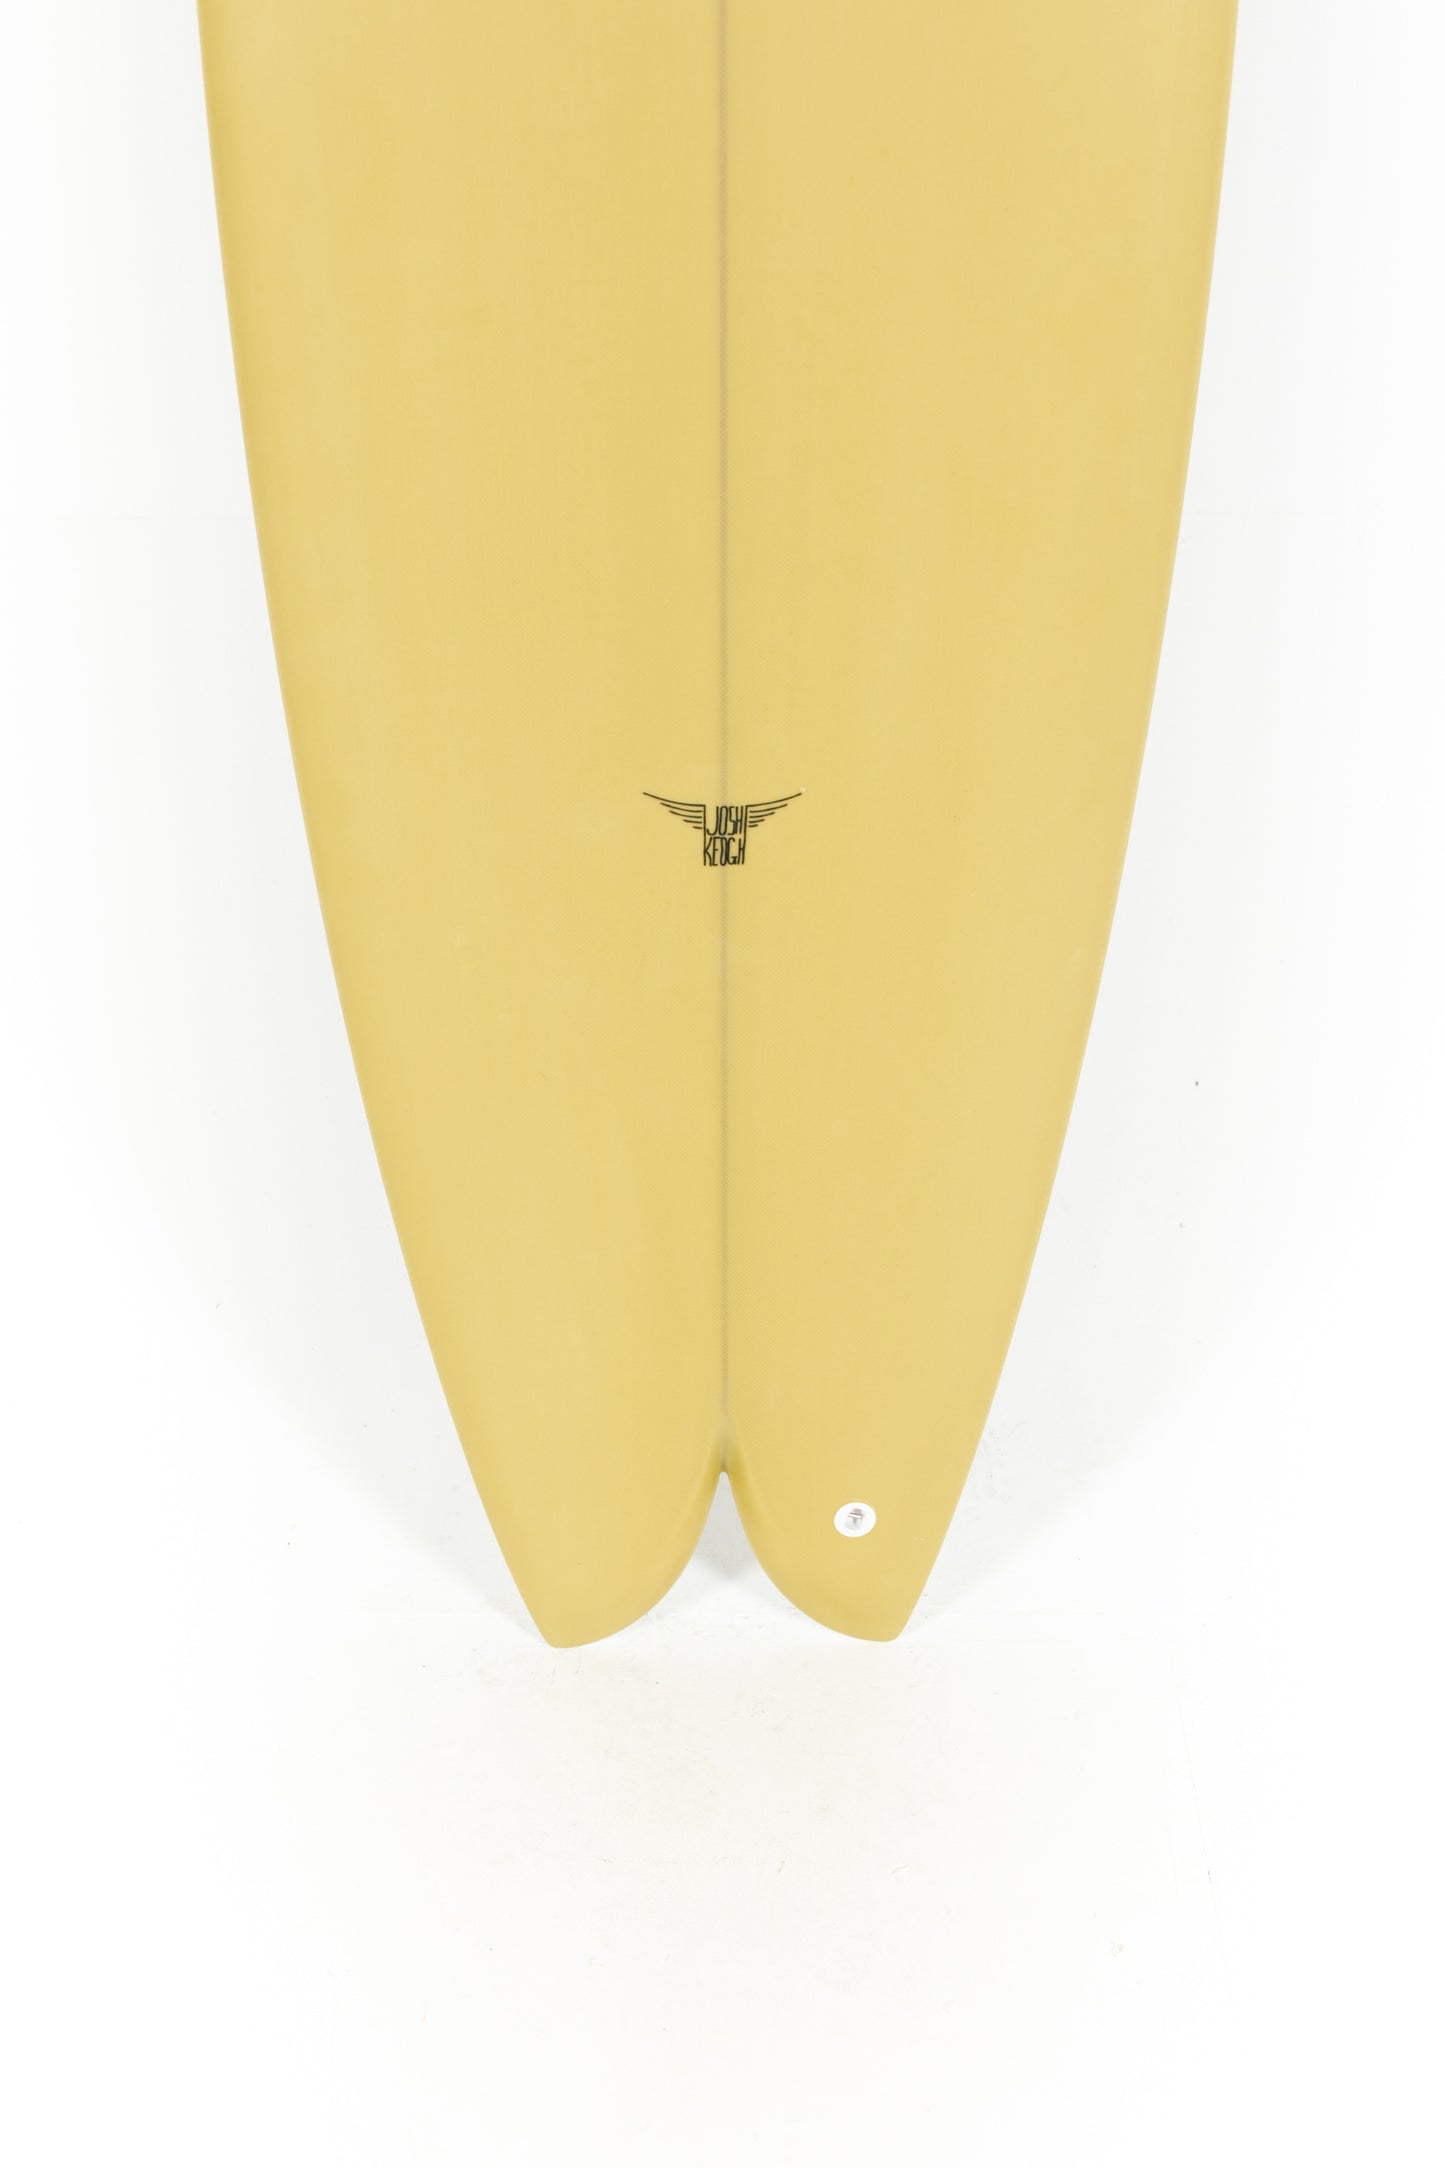 
                  
                    Pukas Surf Shop_Joshua Keogh Surfboard - M2 by Joshua Keogh - 6'10" x 21 1/2 x 2 3/4 - M2610
                  
                